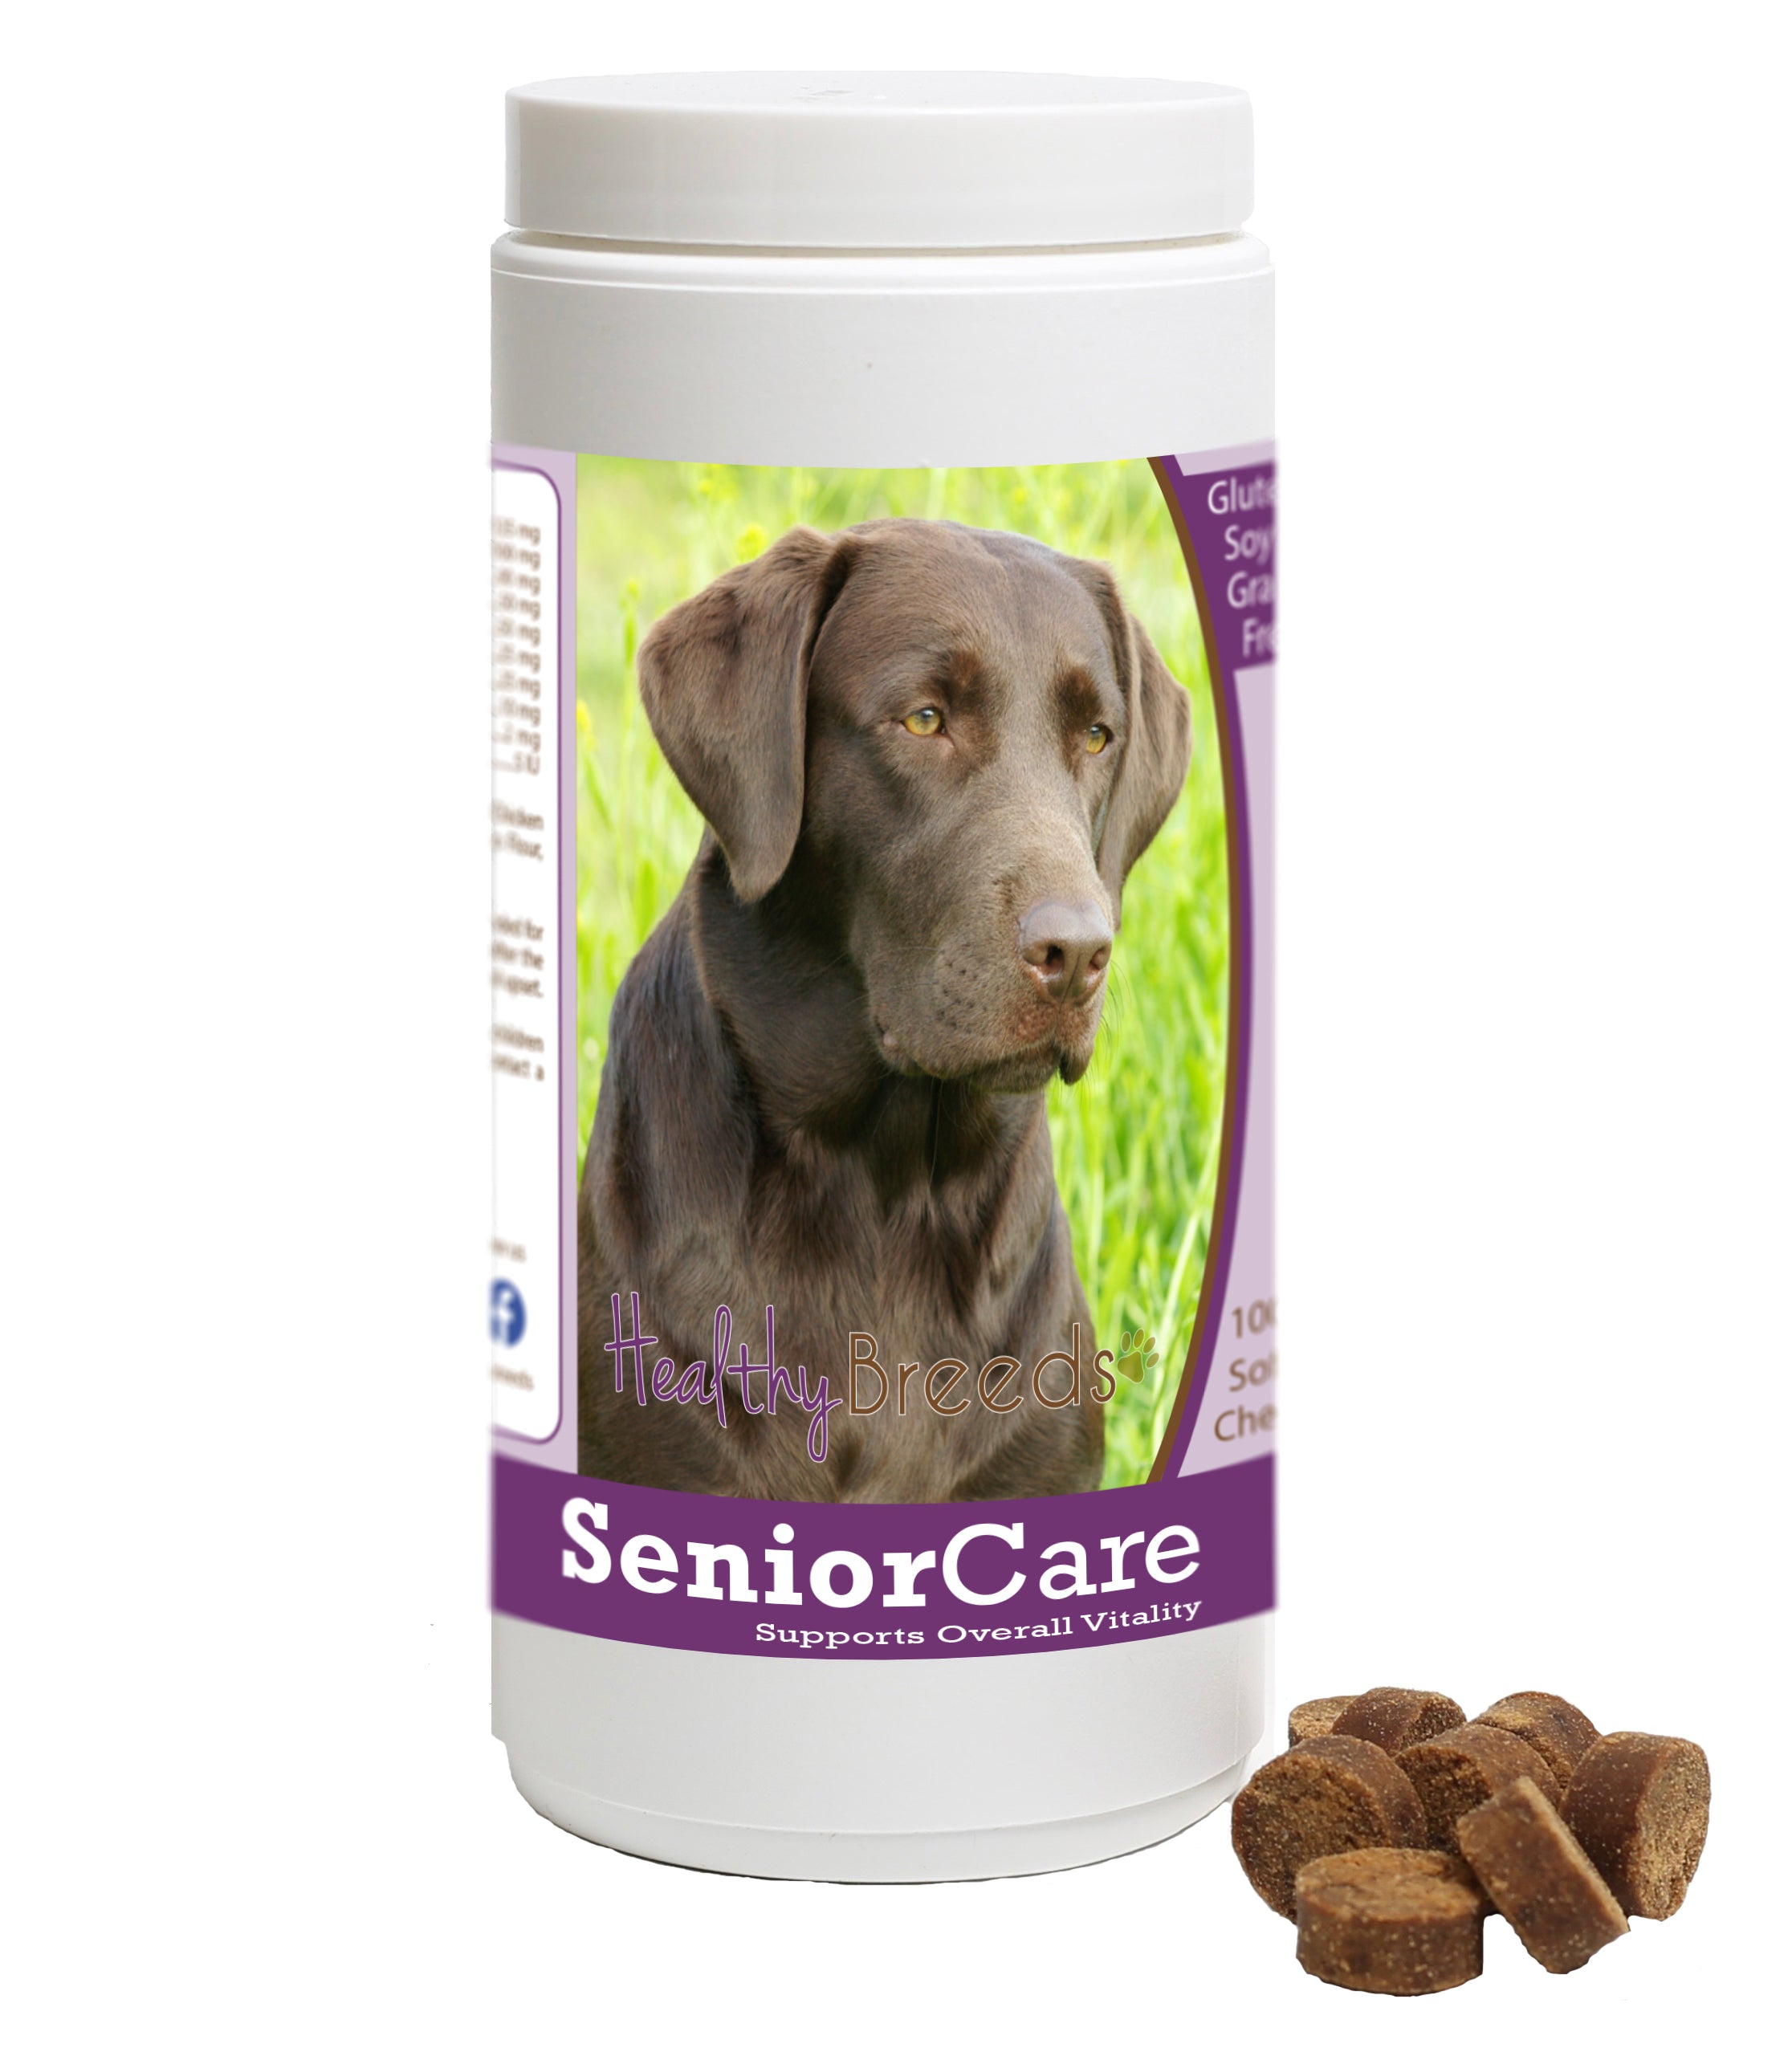 Healthy Breeds Senior Dog Care Soft Chews - Newfoundland